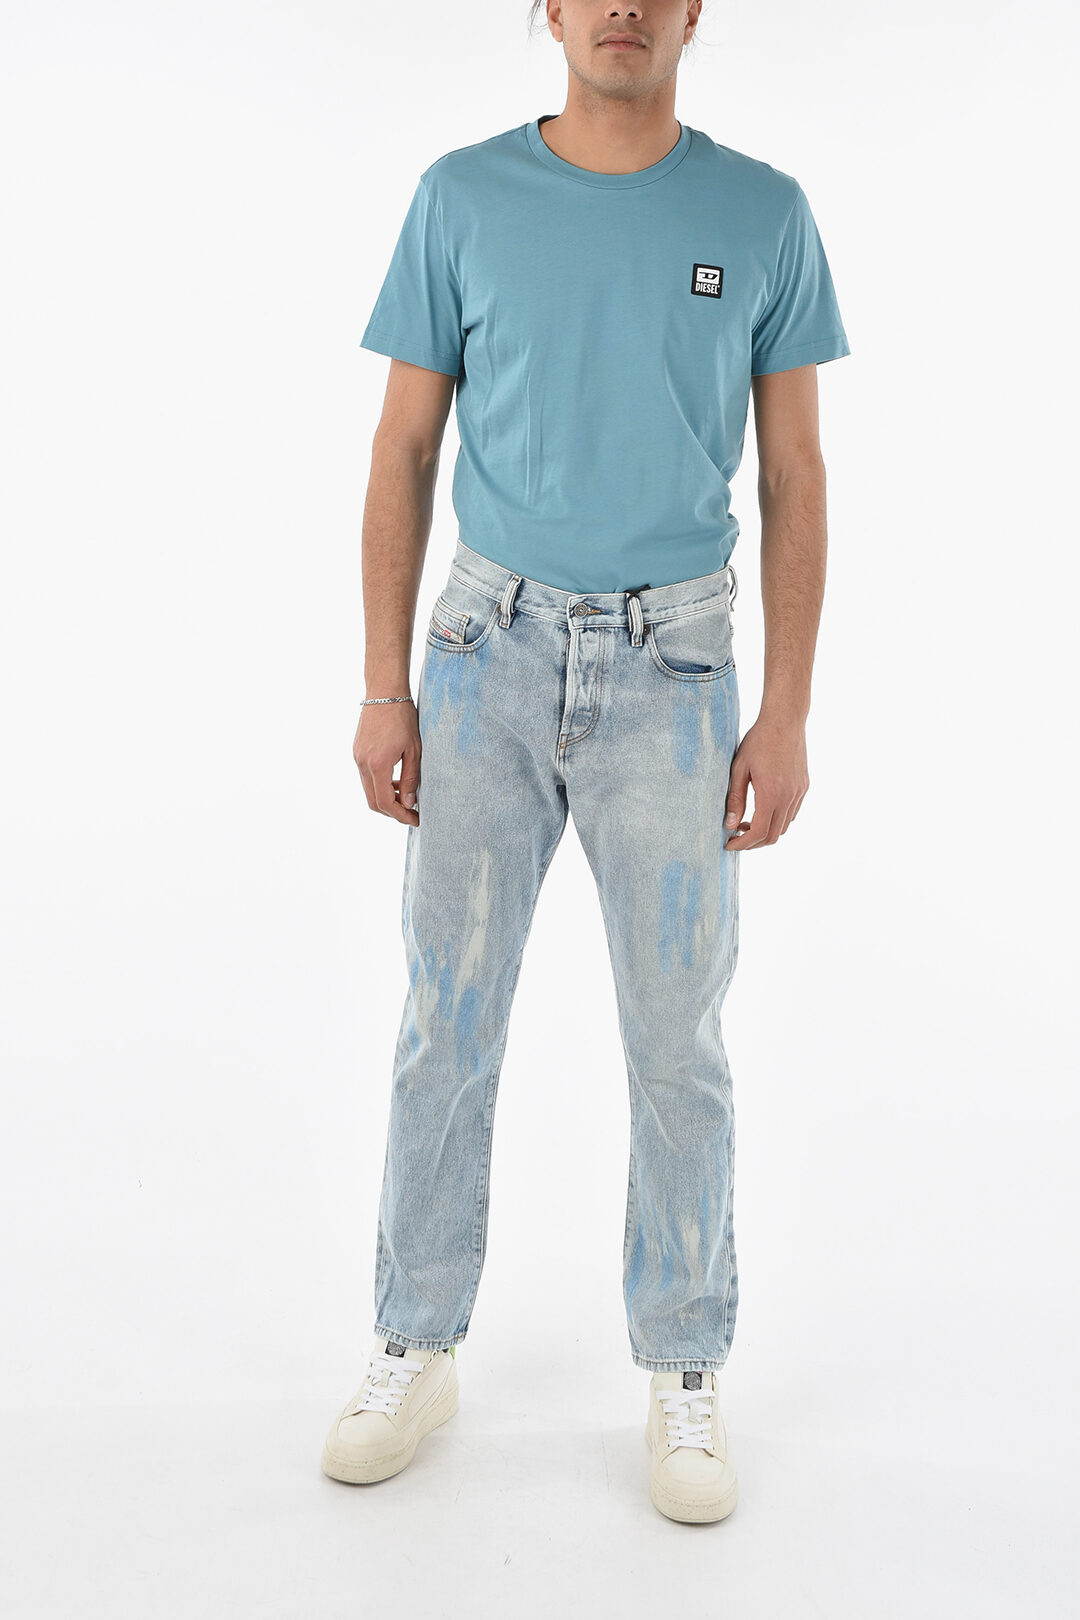 Diesel Vintage Effect 5 Pockets Jeans 18cm L32 men - Glamood Outlet